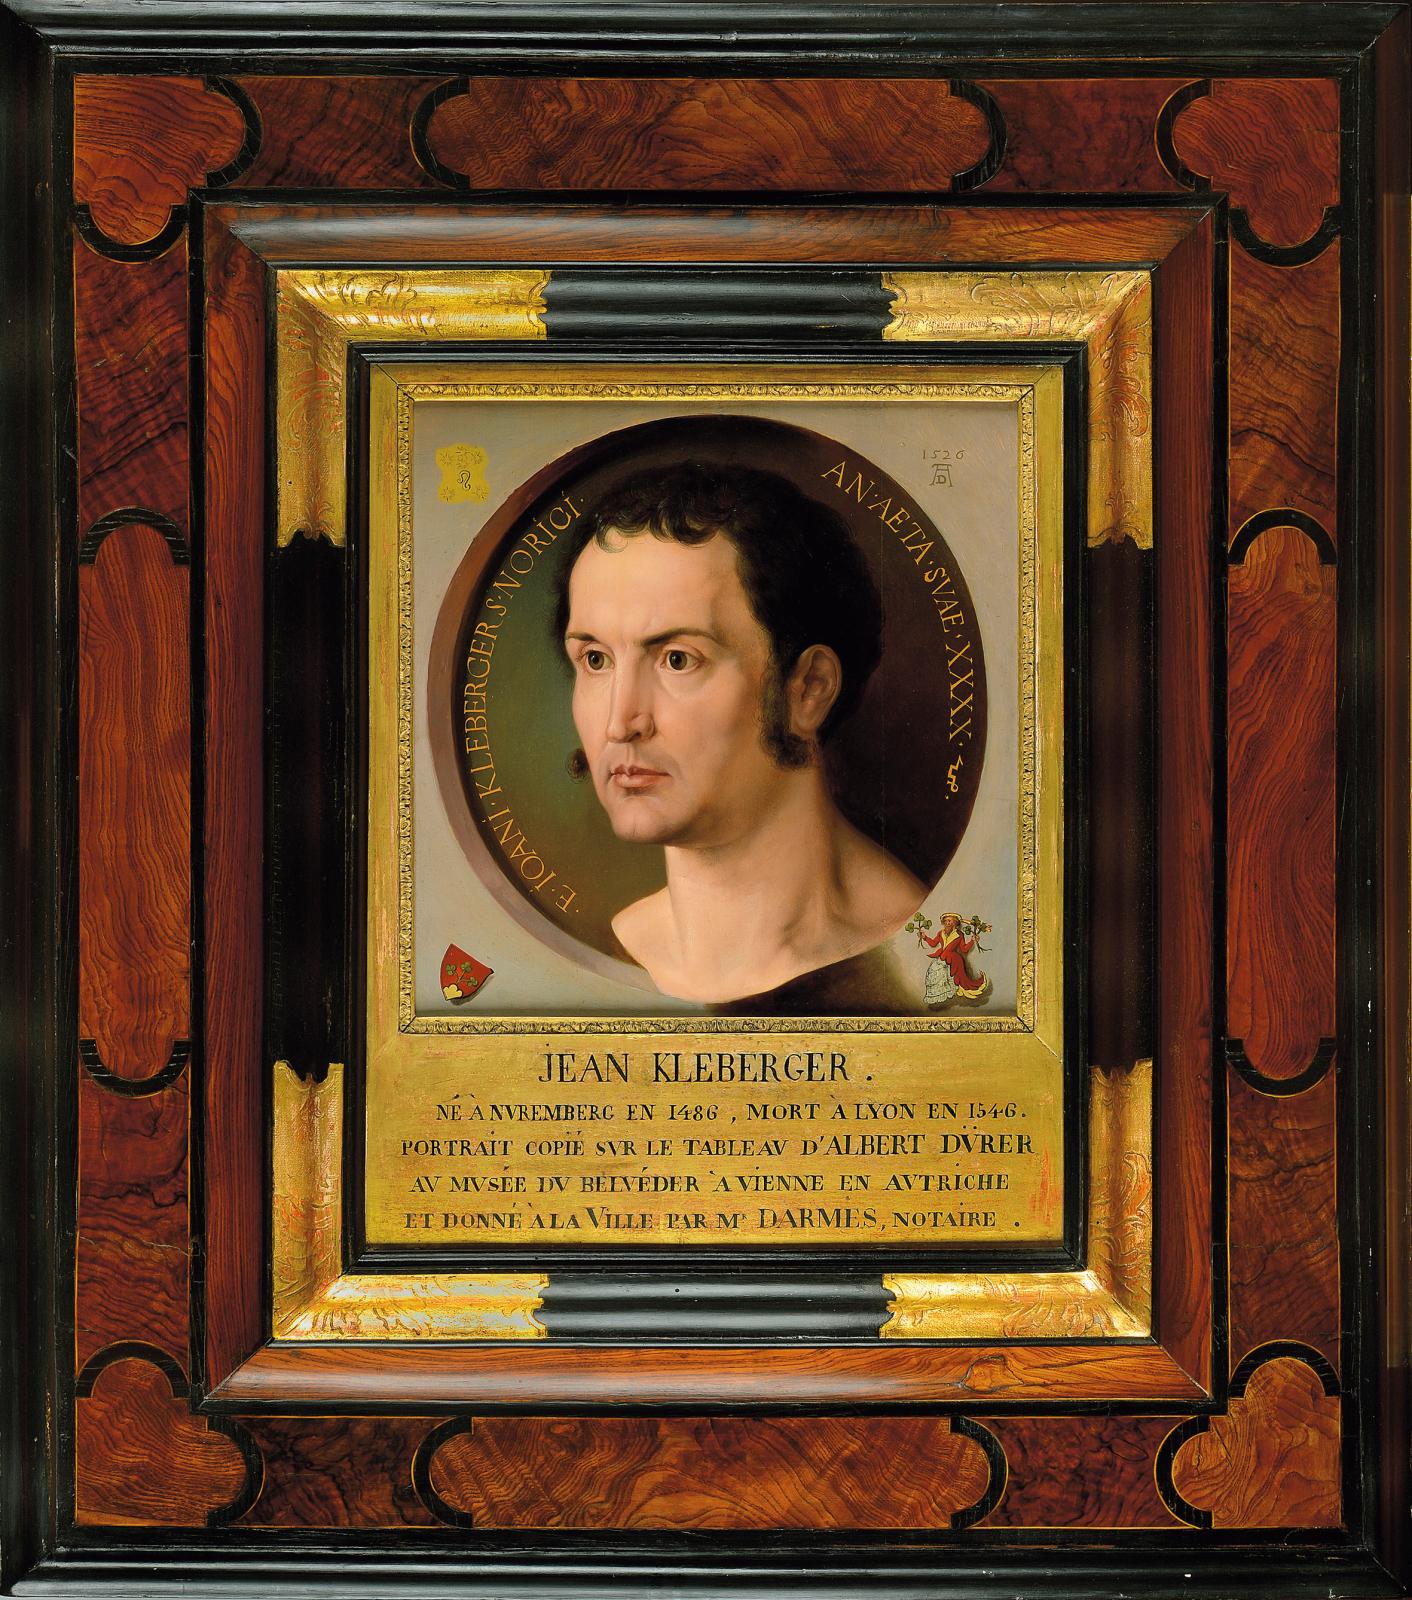 Anonyme (d’après Albrecht Dürer), Portrait de Jean Kleberger, XIXe siècle, huile sur toile, musée d’histoire de Lyon – Gadagne. © Pierre A